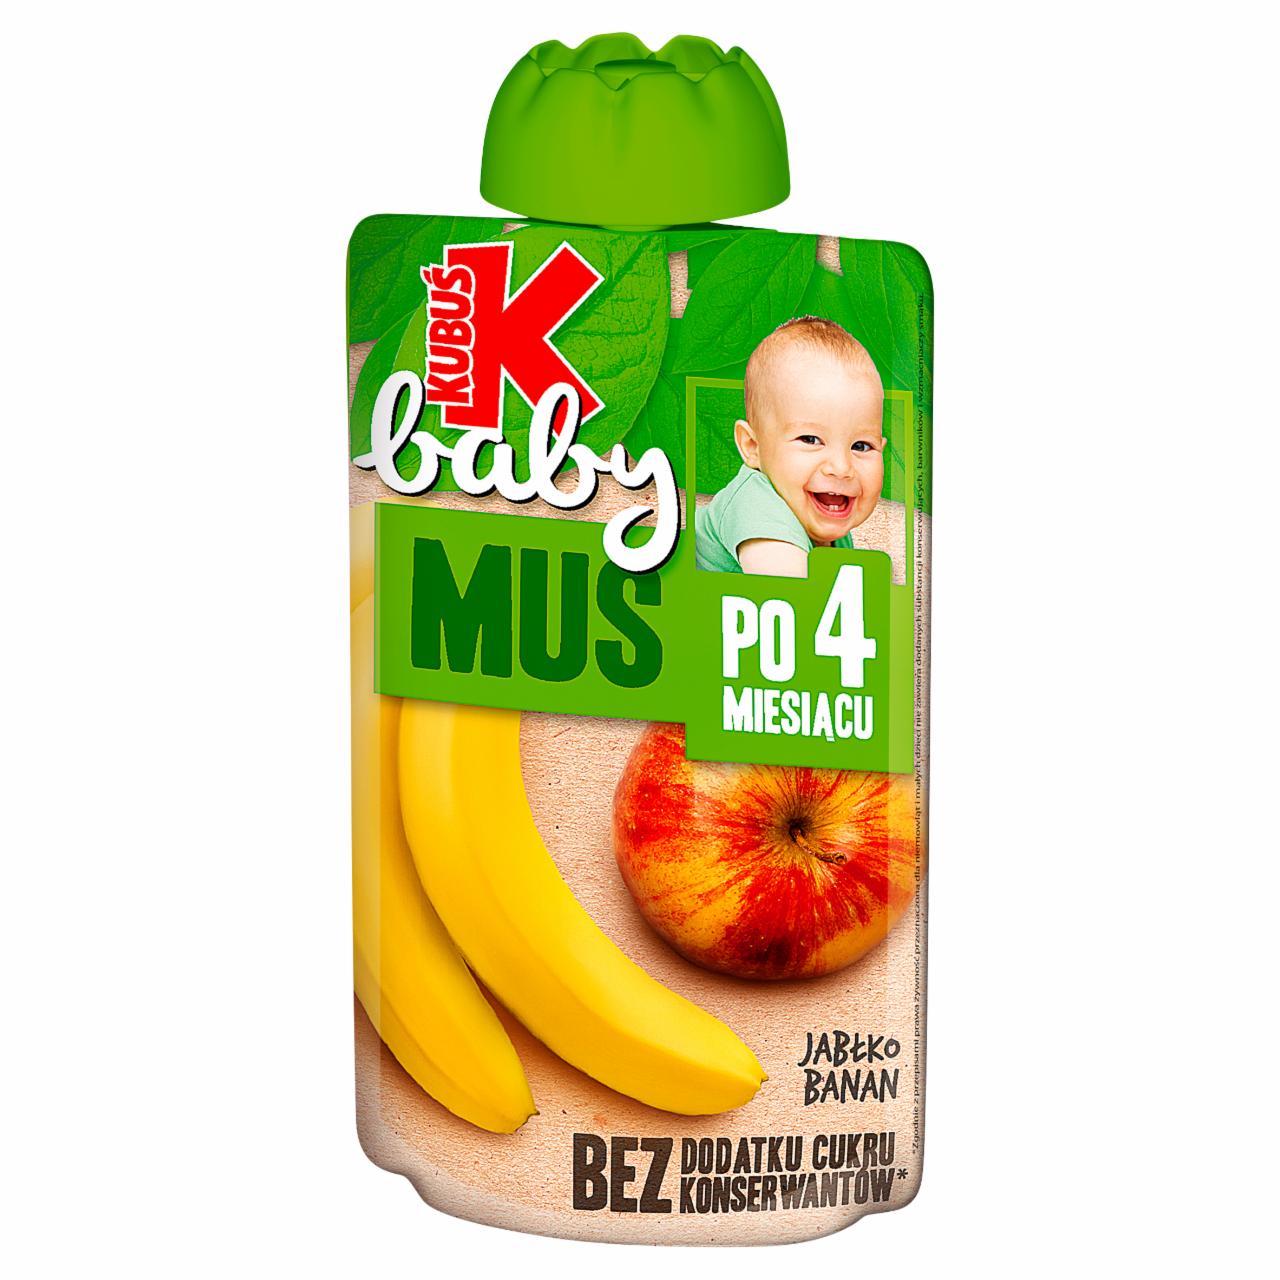 Fotografie - Baby Mus po 4 miesiącu jabłko banan Kubuś